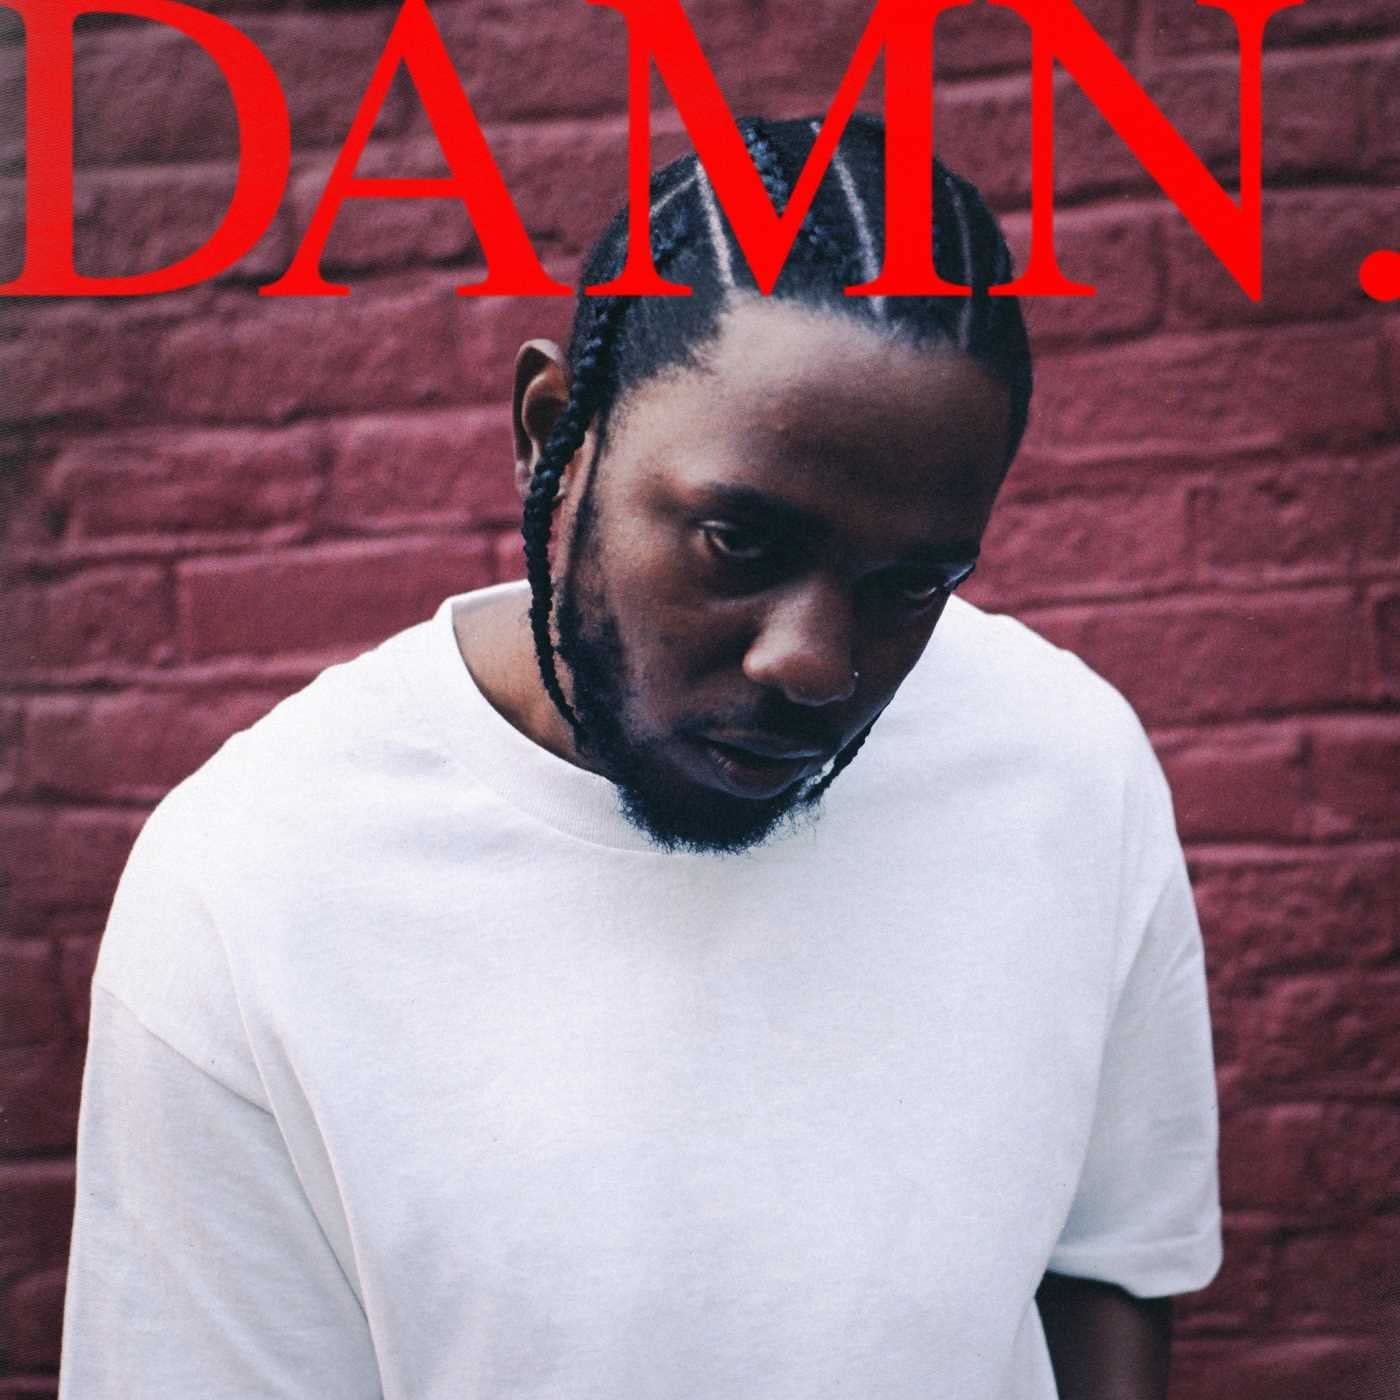 Artwork for Kendrick Lamar’s album ‘DAMN.’